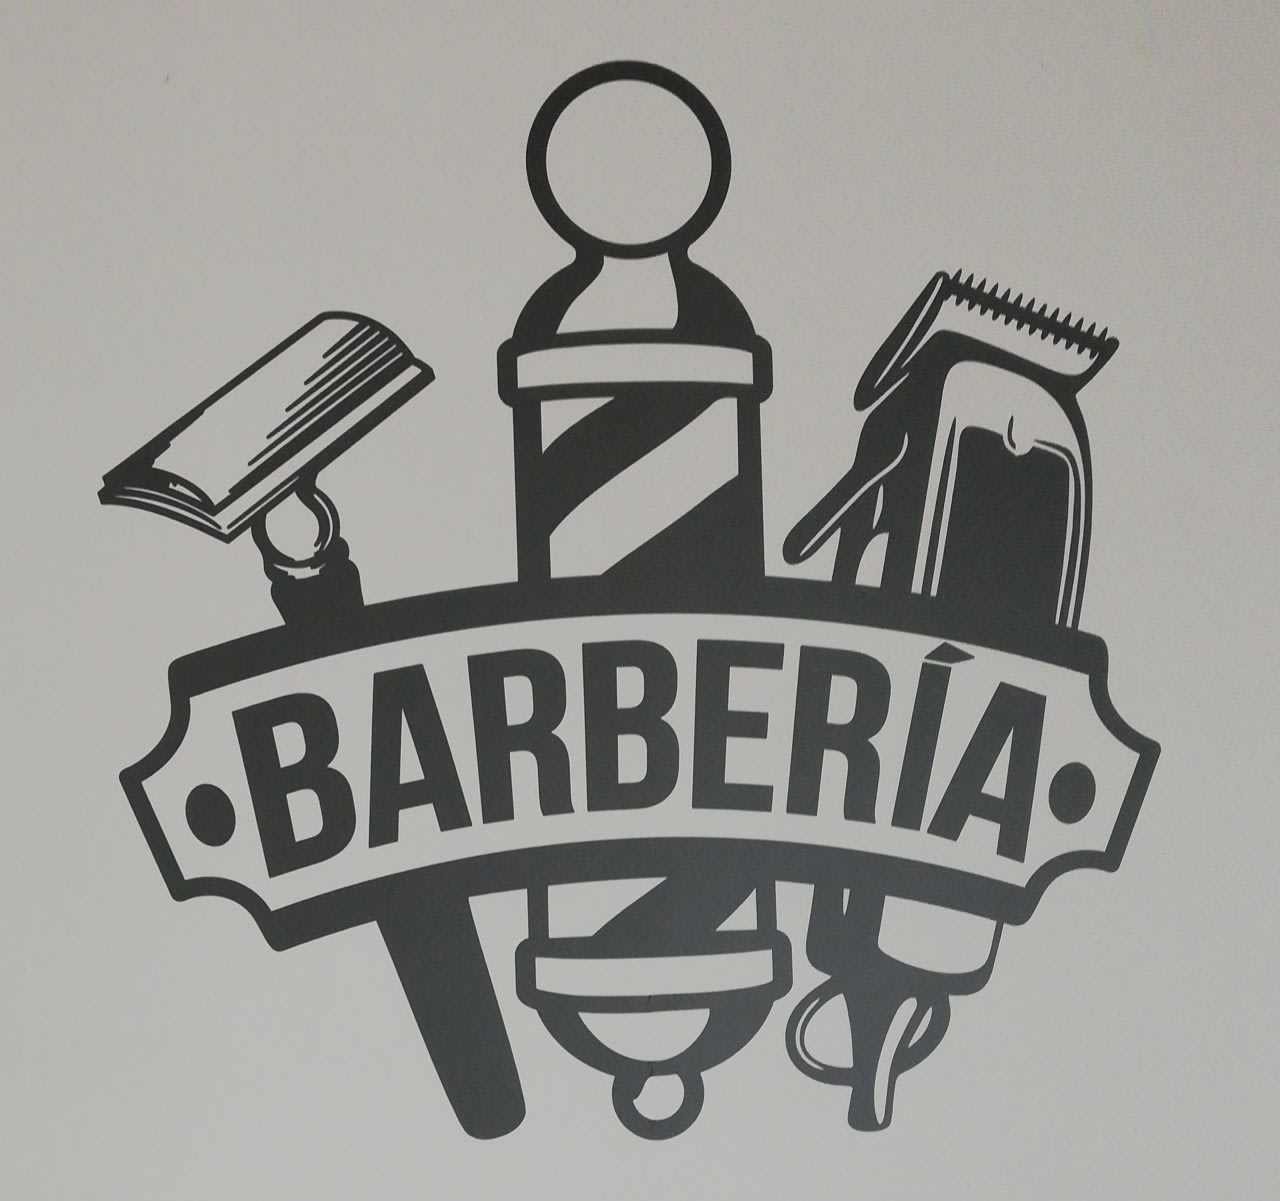 Barbería Vero Vega